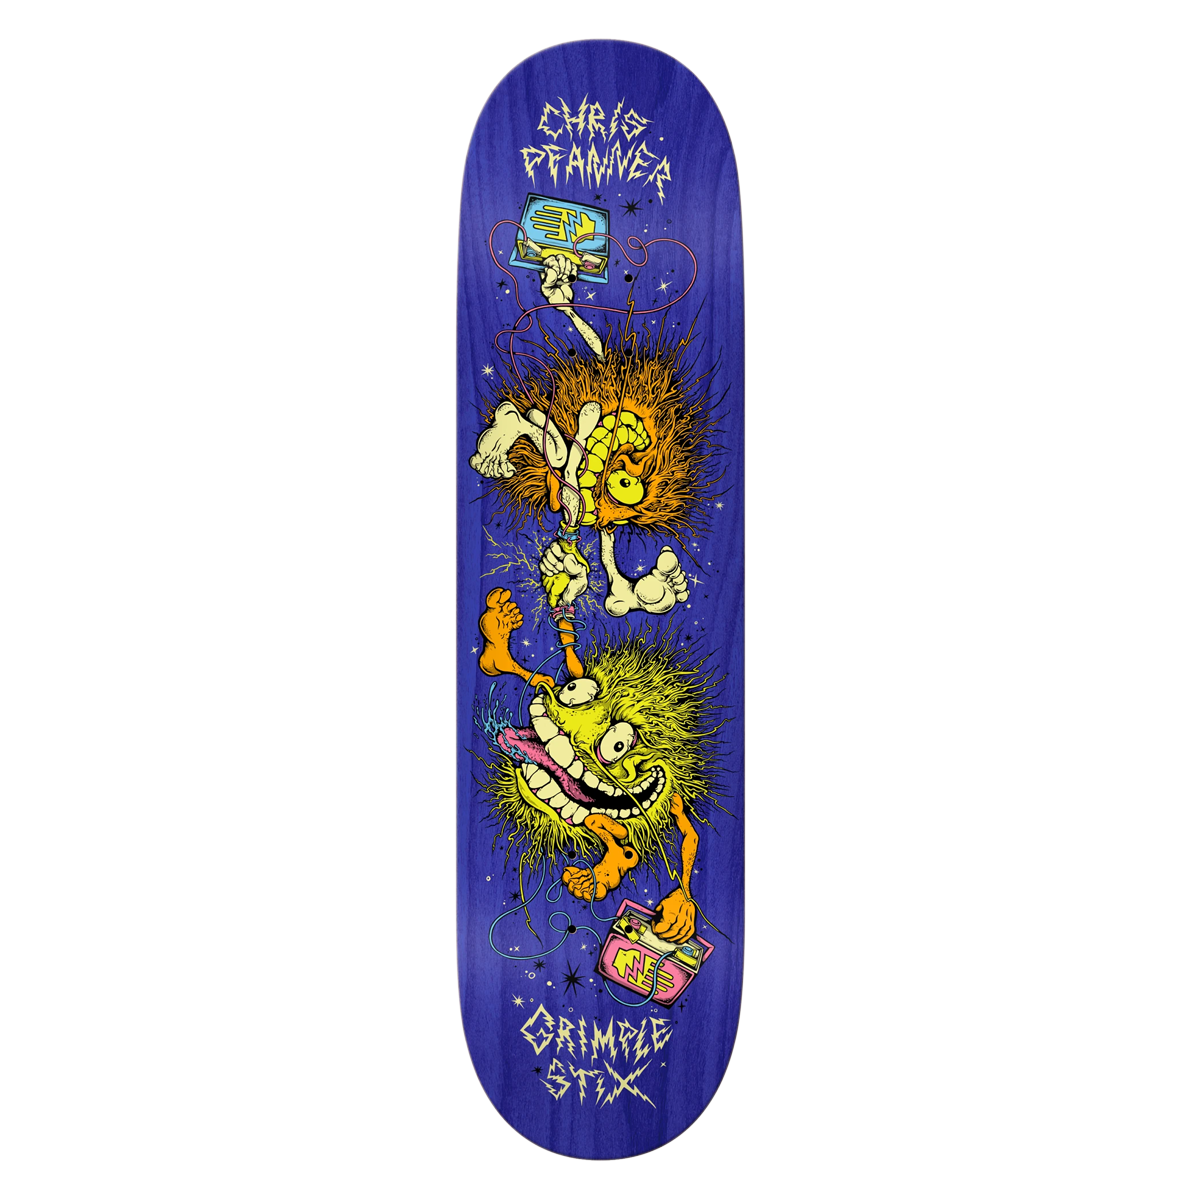 Antihero Pfanner Grimple Stix Guest Skate Deck - 8.06